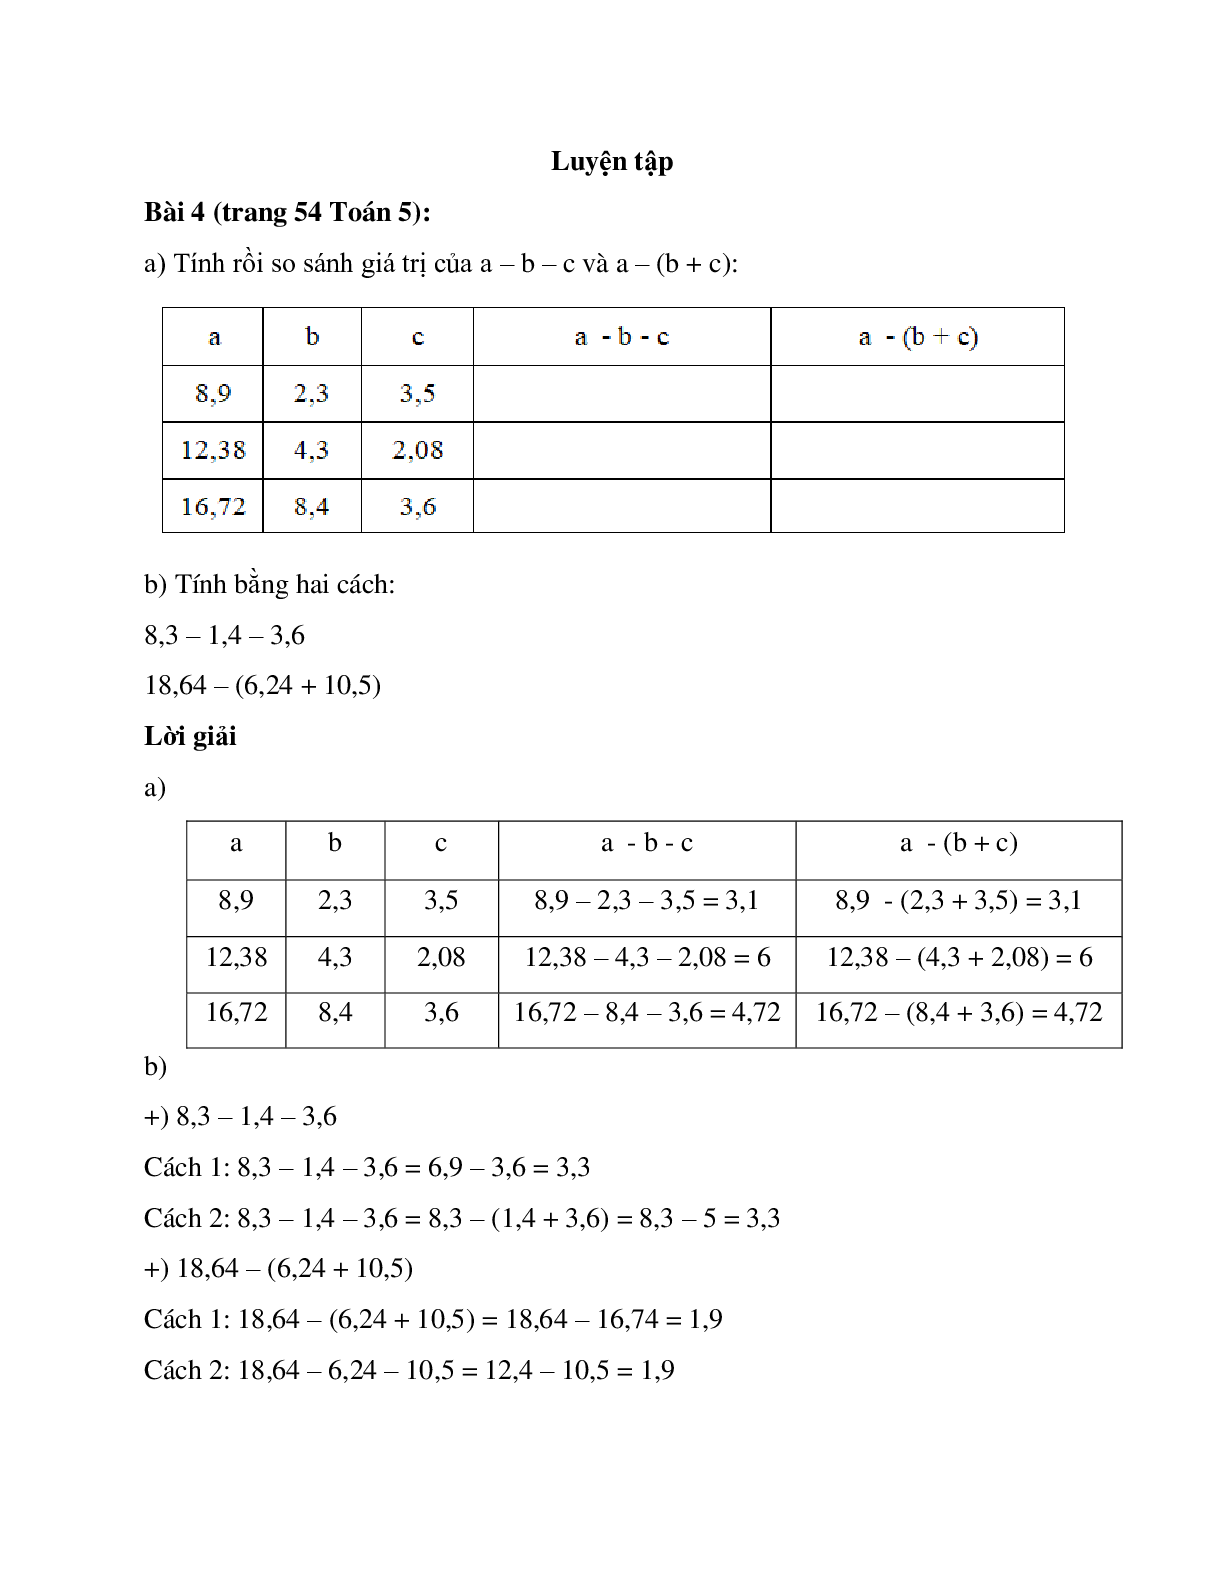 Tính rồi so sánh giá trị của a – b – c (trang 1)